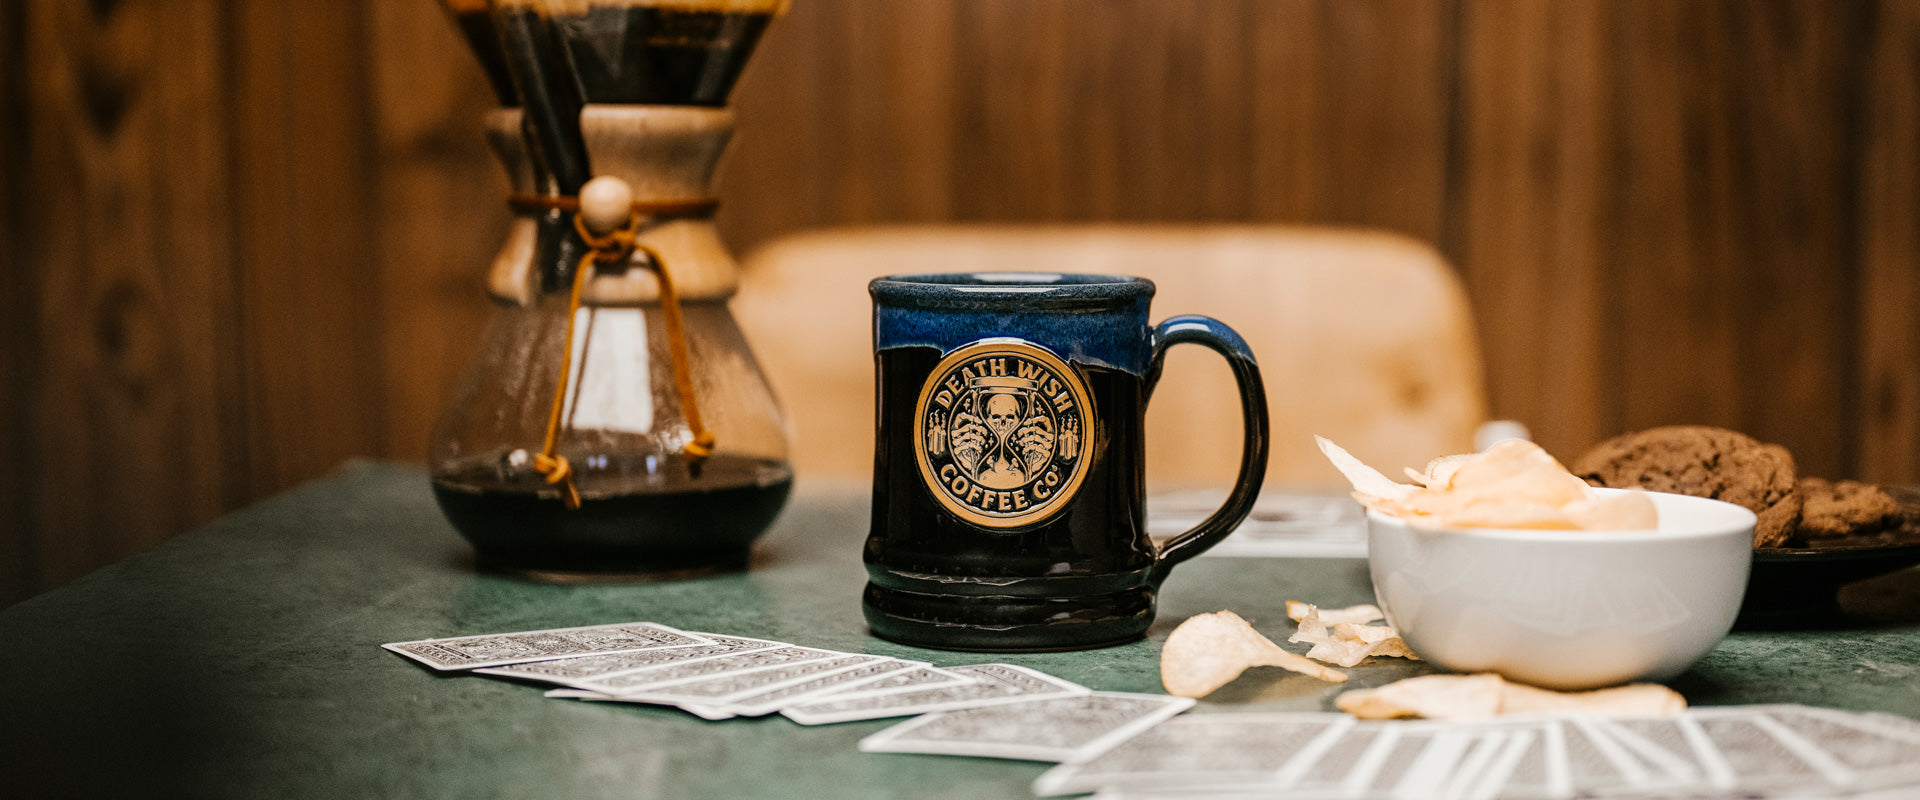 Death Wish Coffee Witching Hour Mug